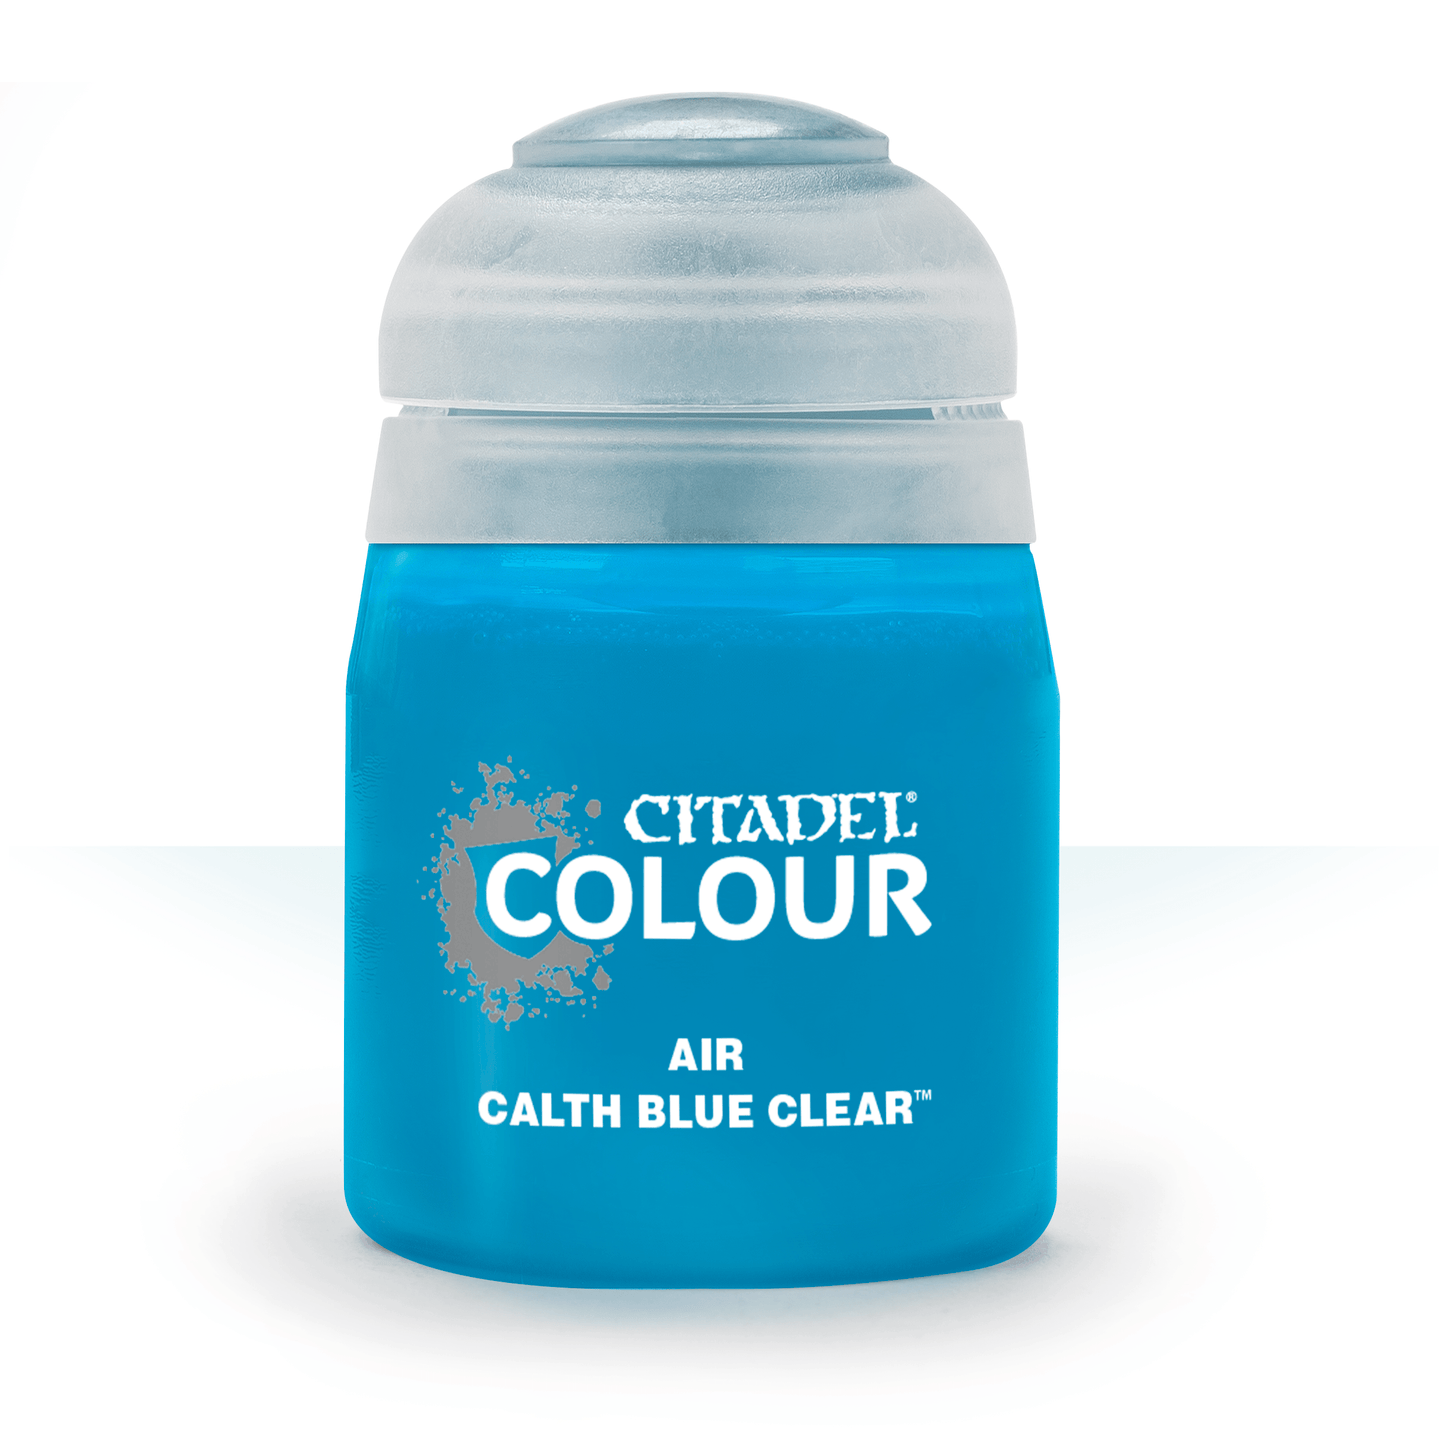 Calth Blue Clear - (Air)